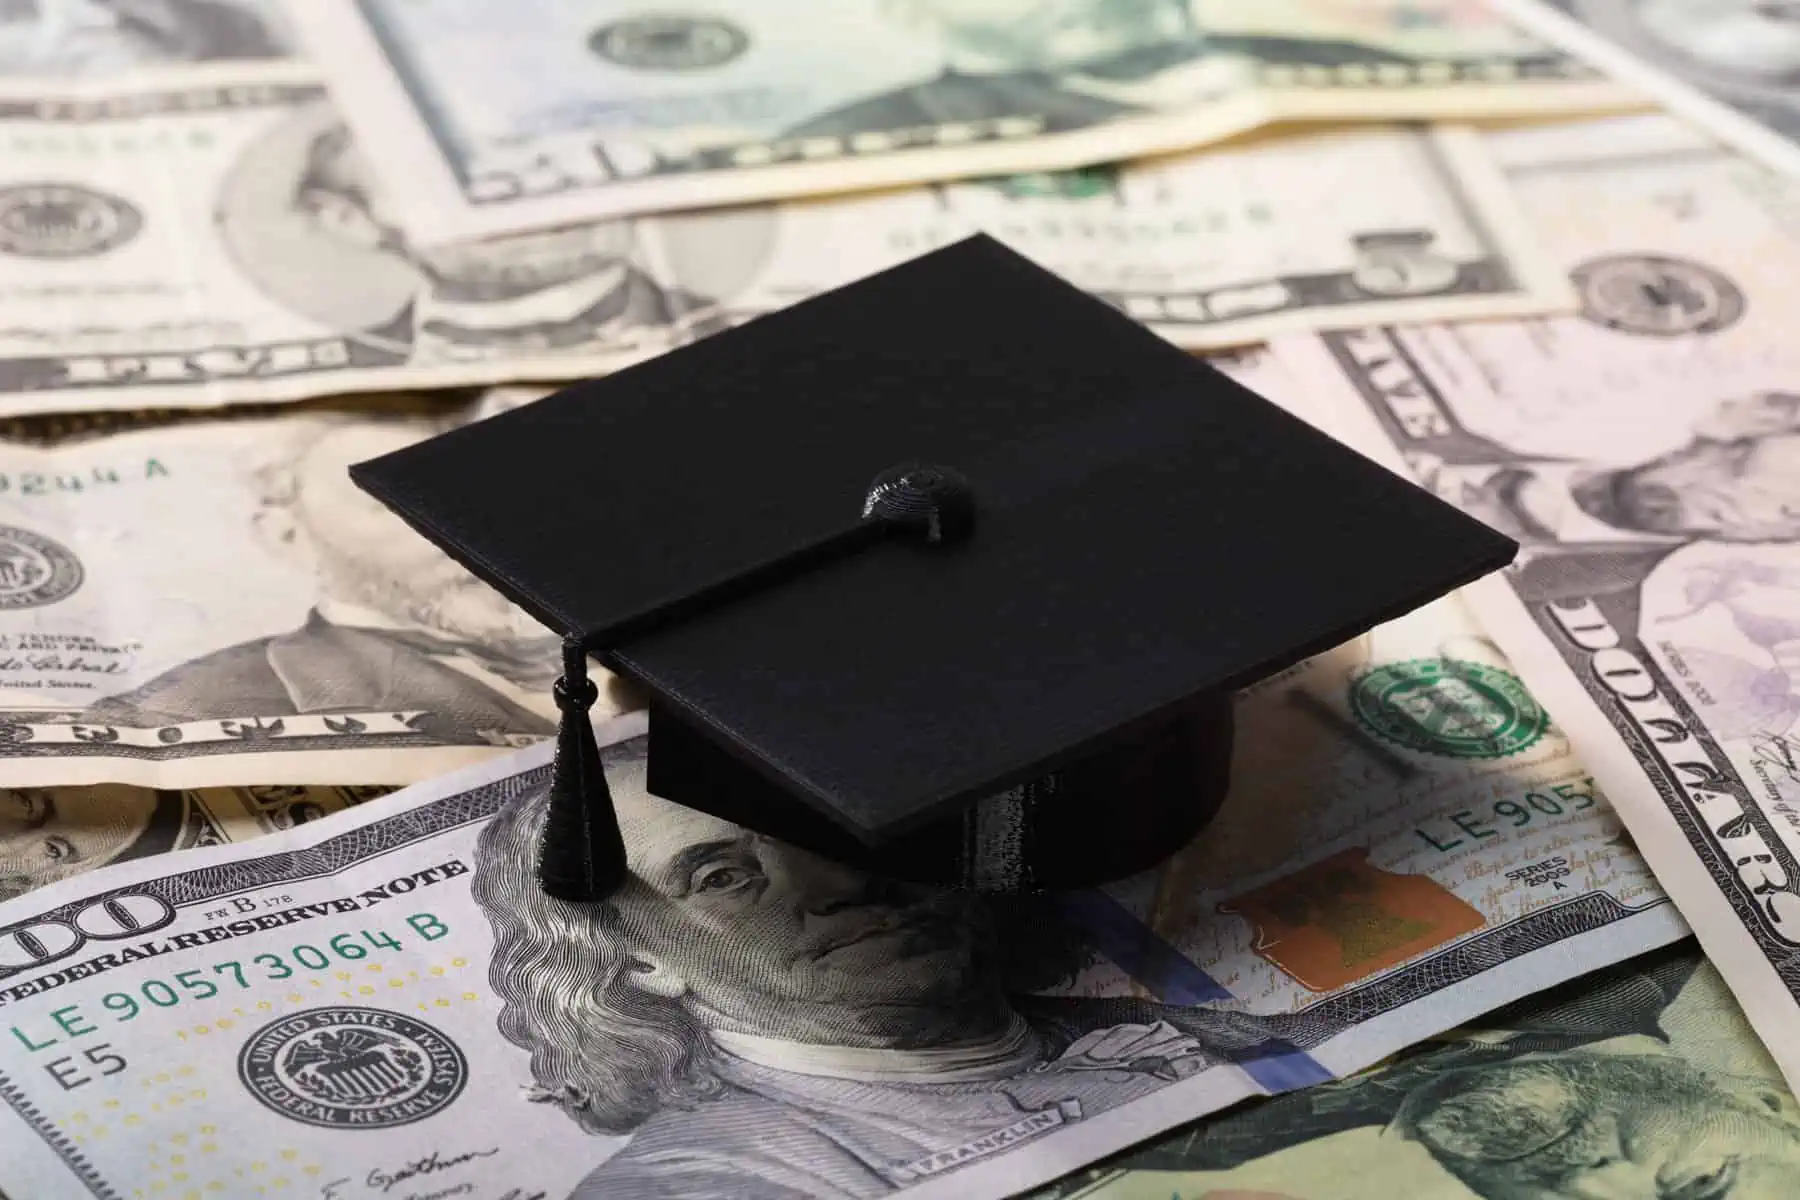 administracion biden lanza nuevo plan de pago de la deuda estudiantil